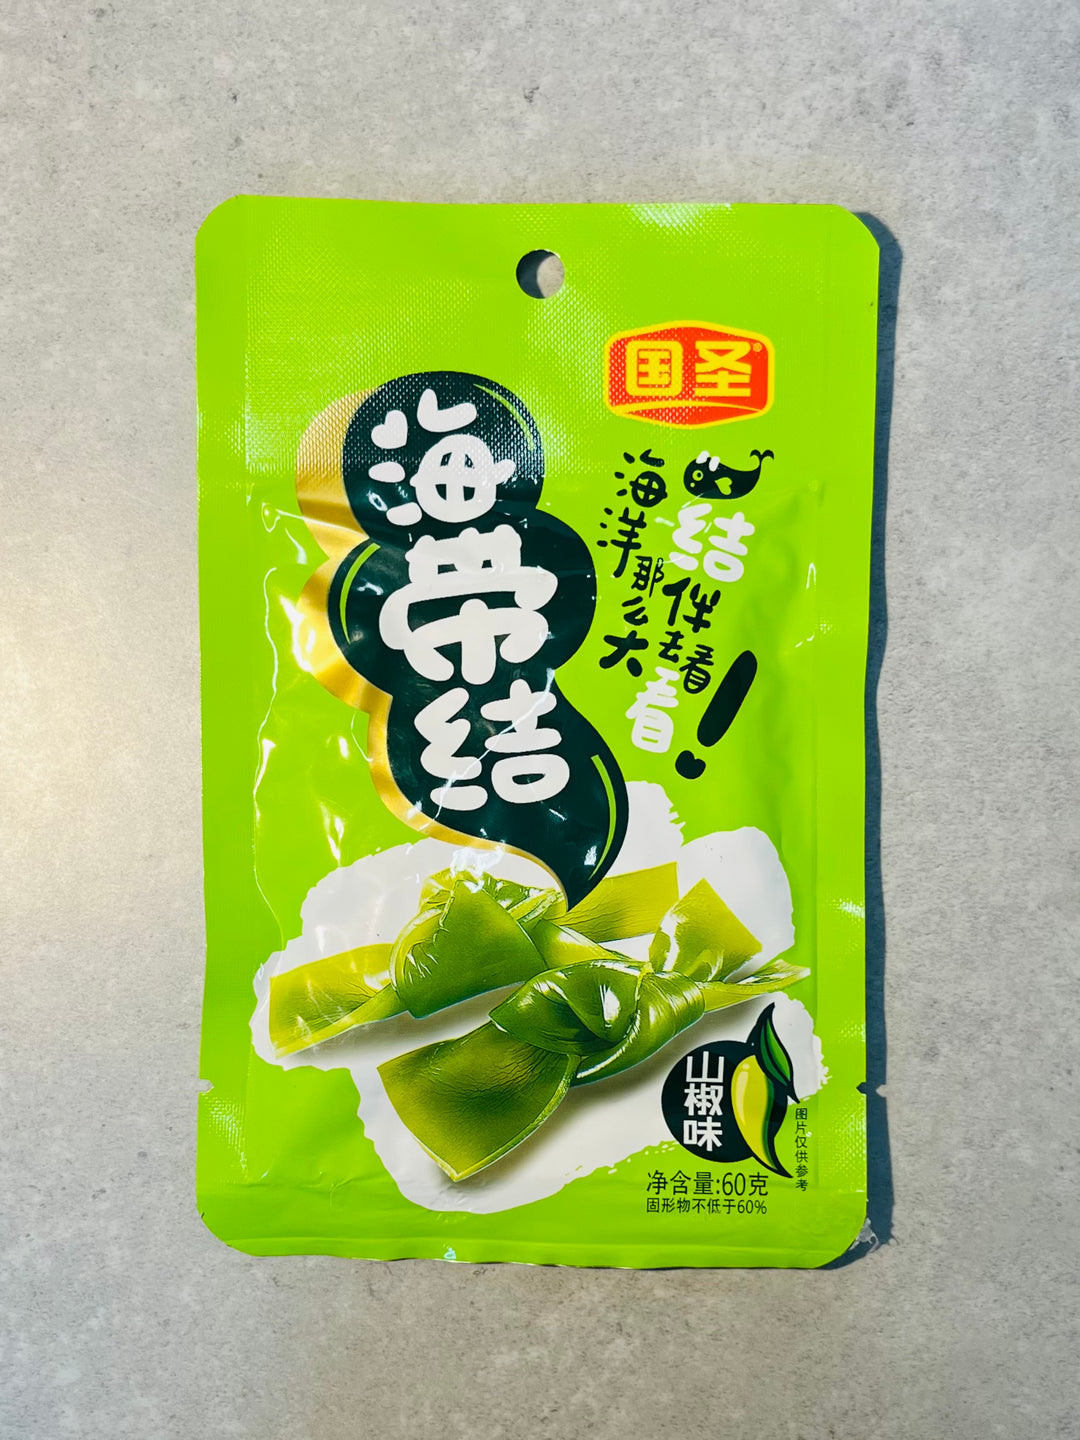 国圣海带结山椒味60g GS Preserved Seaweed Knot Spicy